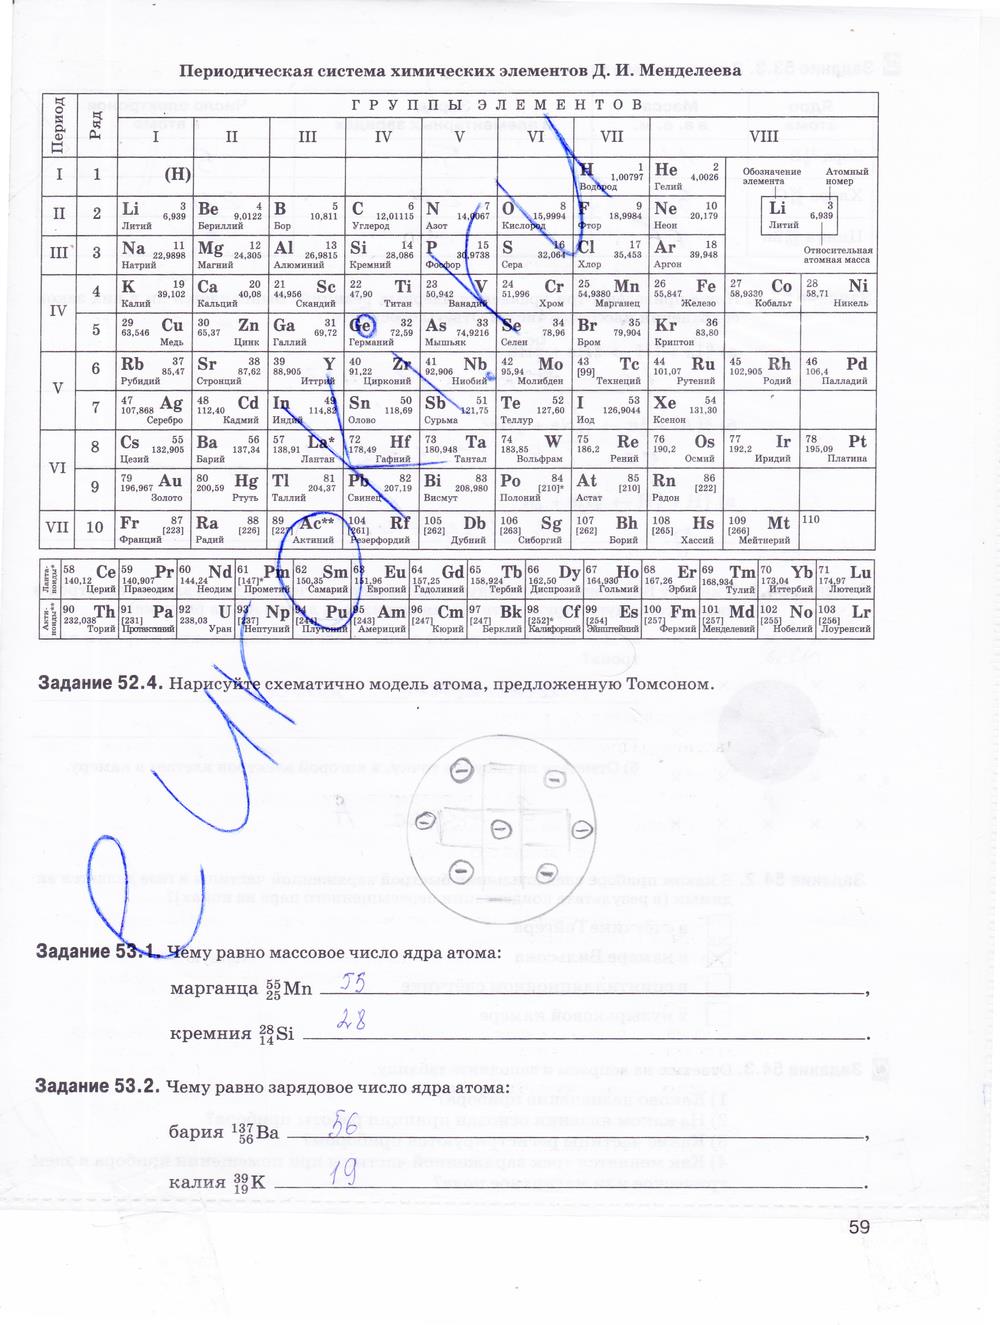 гдз 9 класс рабочая тетрадь страница 59 физика Гутник, Власова